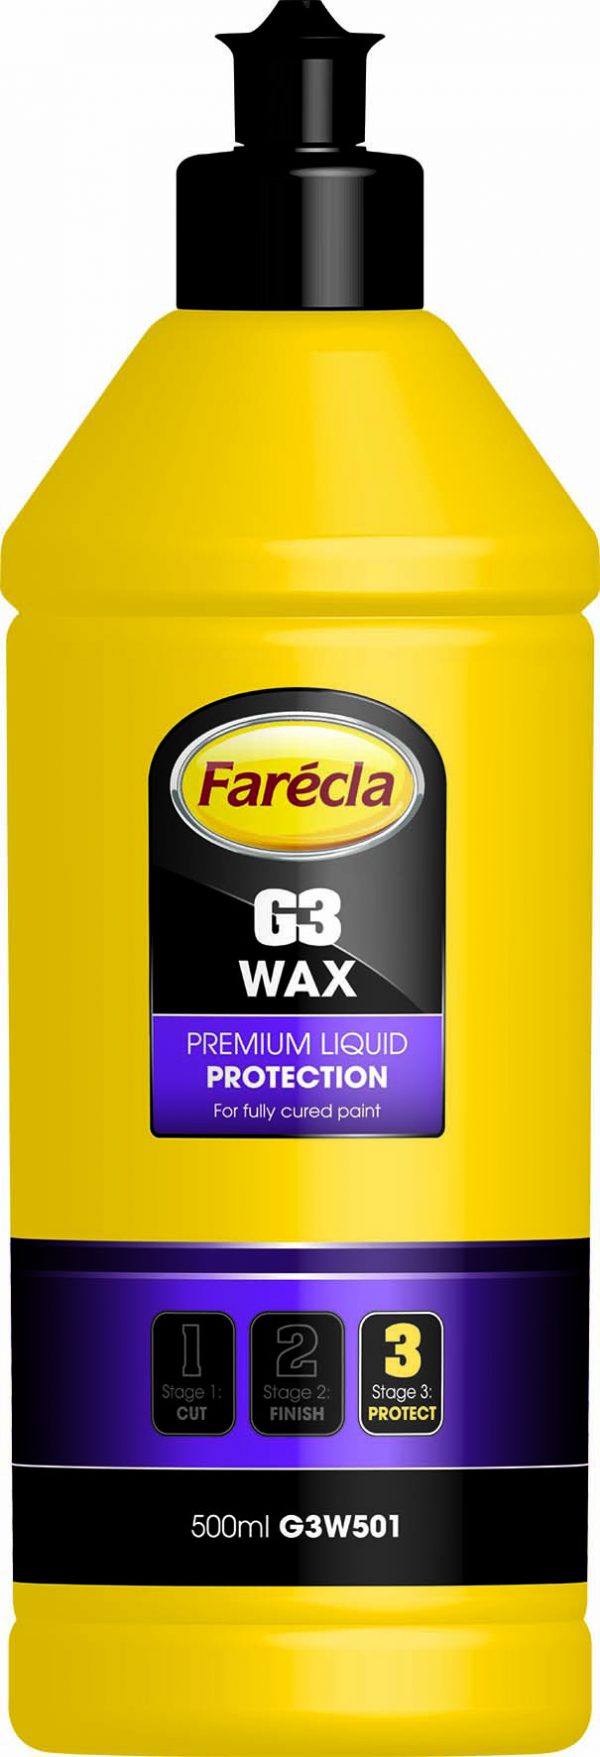 Farecla G3 Wax - Wosk ochronny 500ml